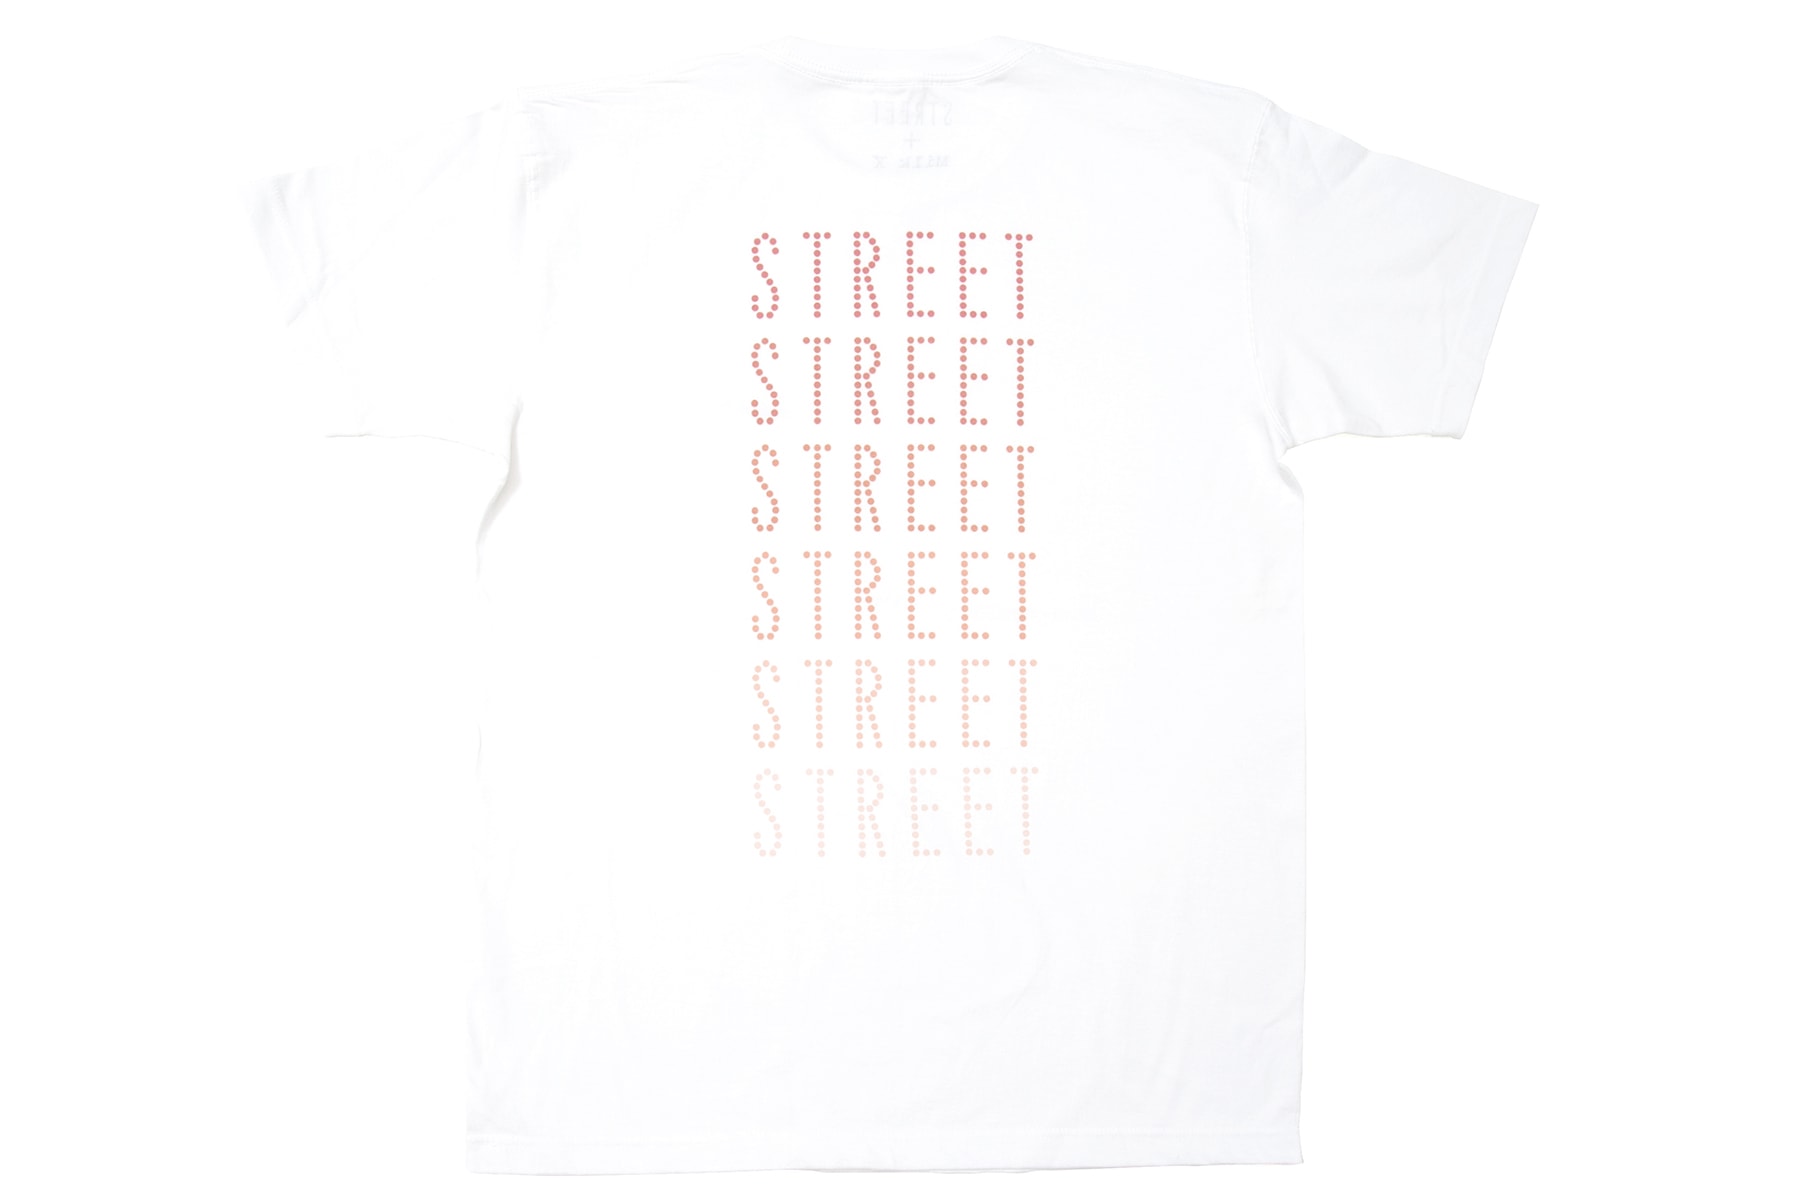 港日聯手 -《MILK X》與《STREET》攜手推出服飾聯乘系列